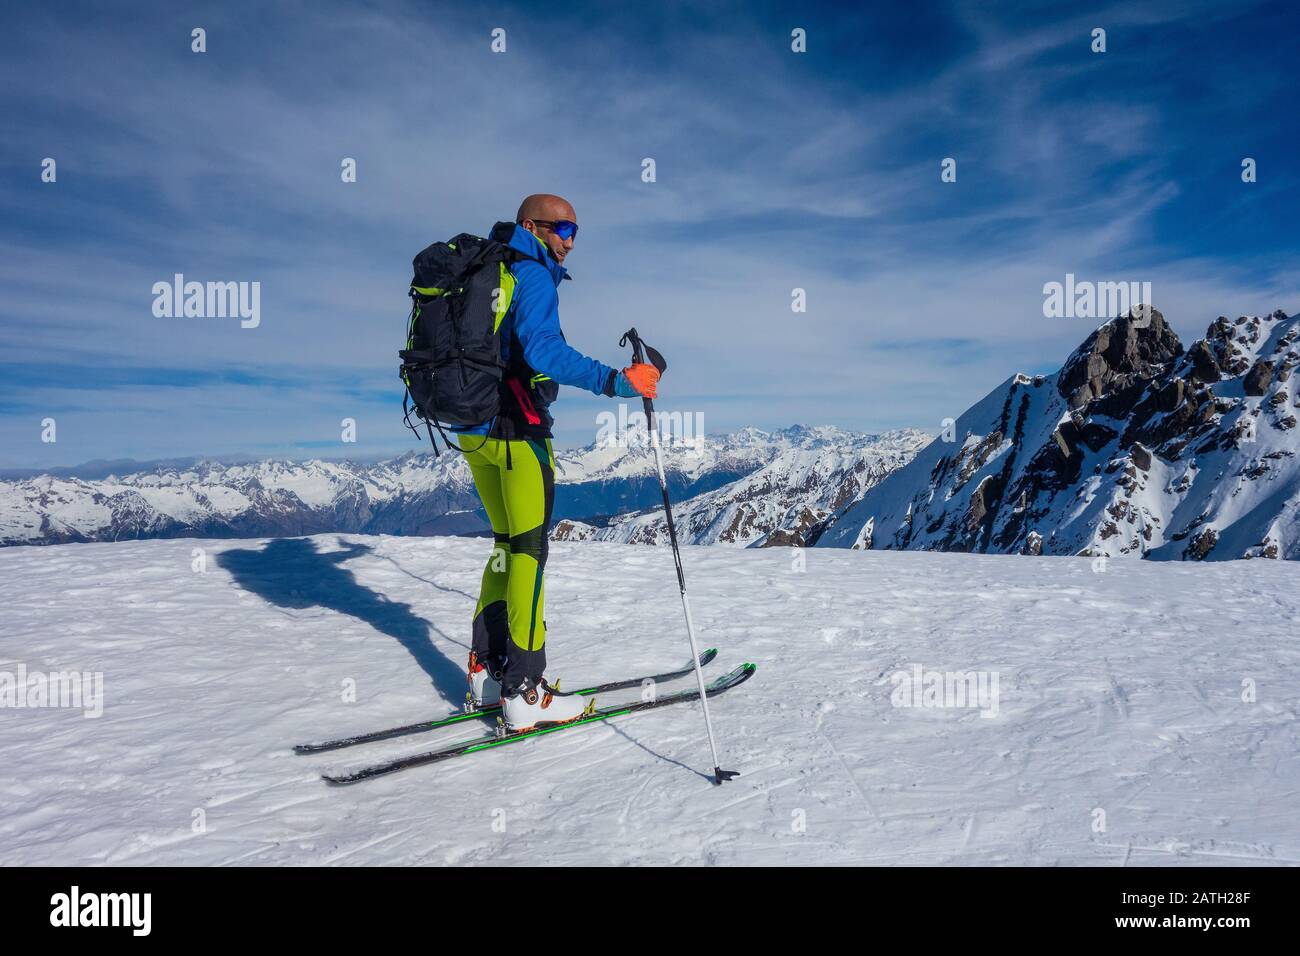 Le ski alpiniste arrivé en haut est prêt pour la descente Banque D'Images